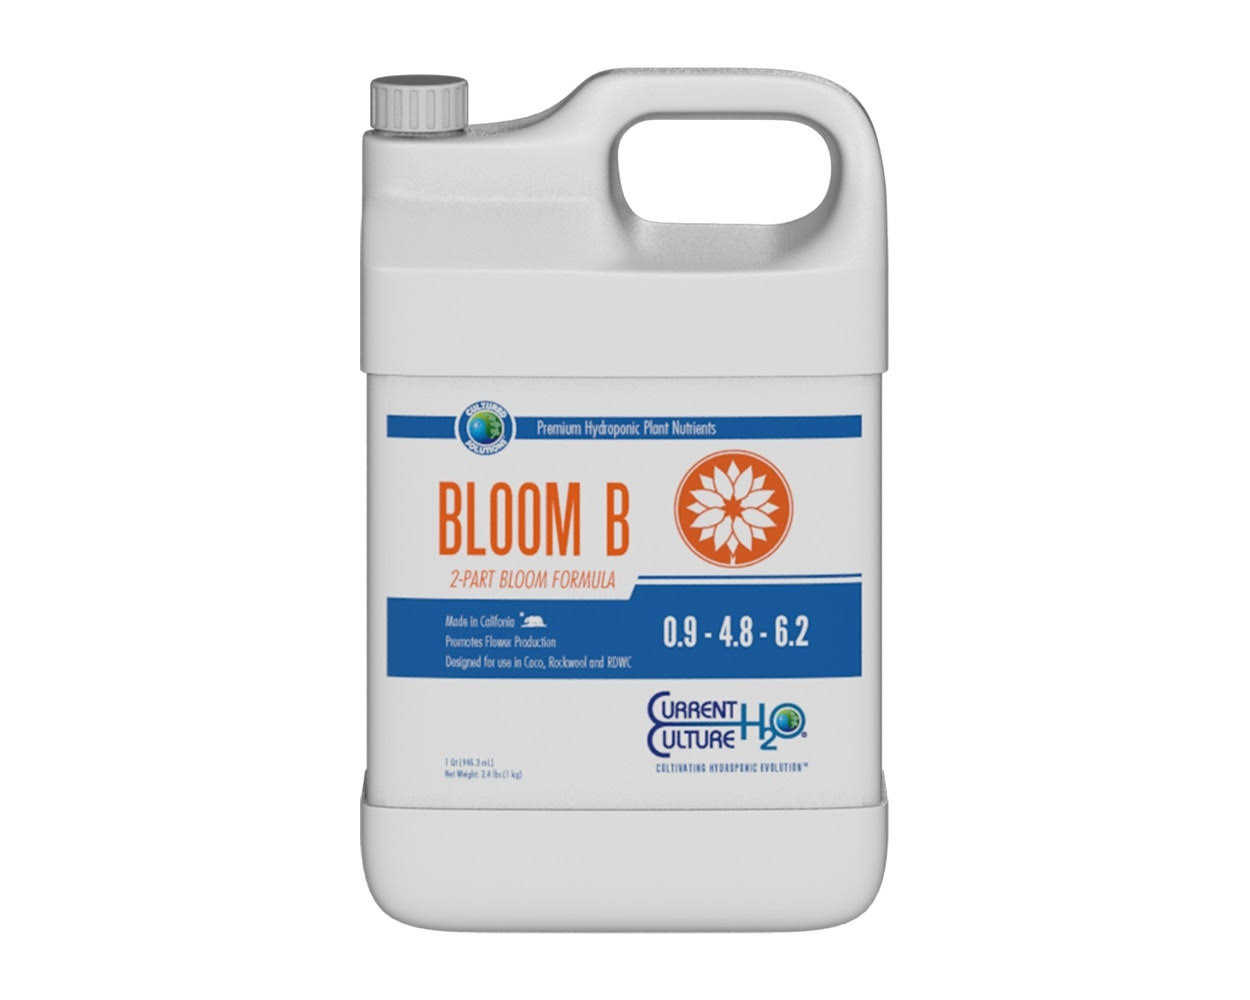 Cultured Solutions - Bloom B Quart